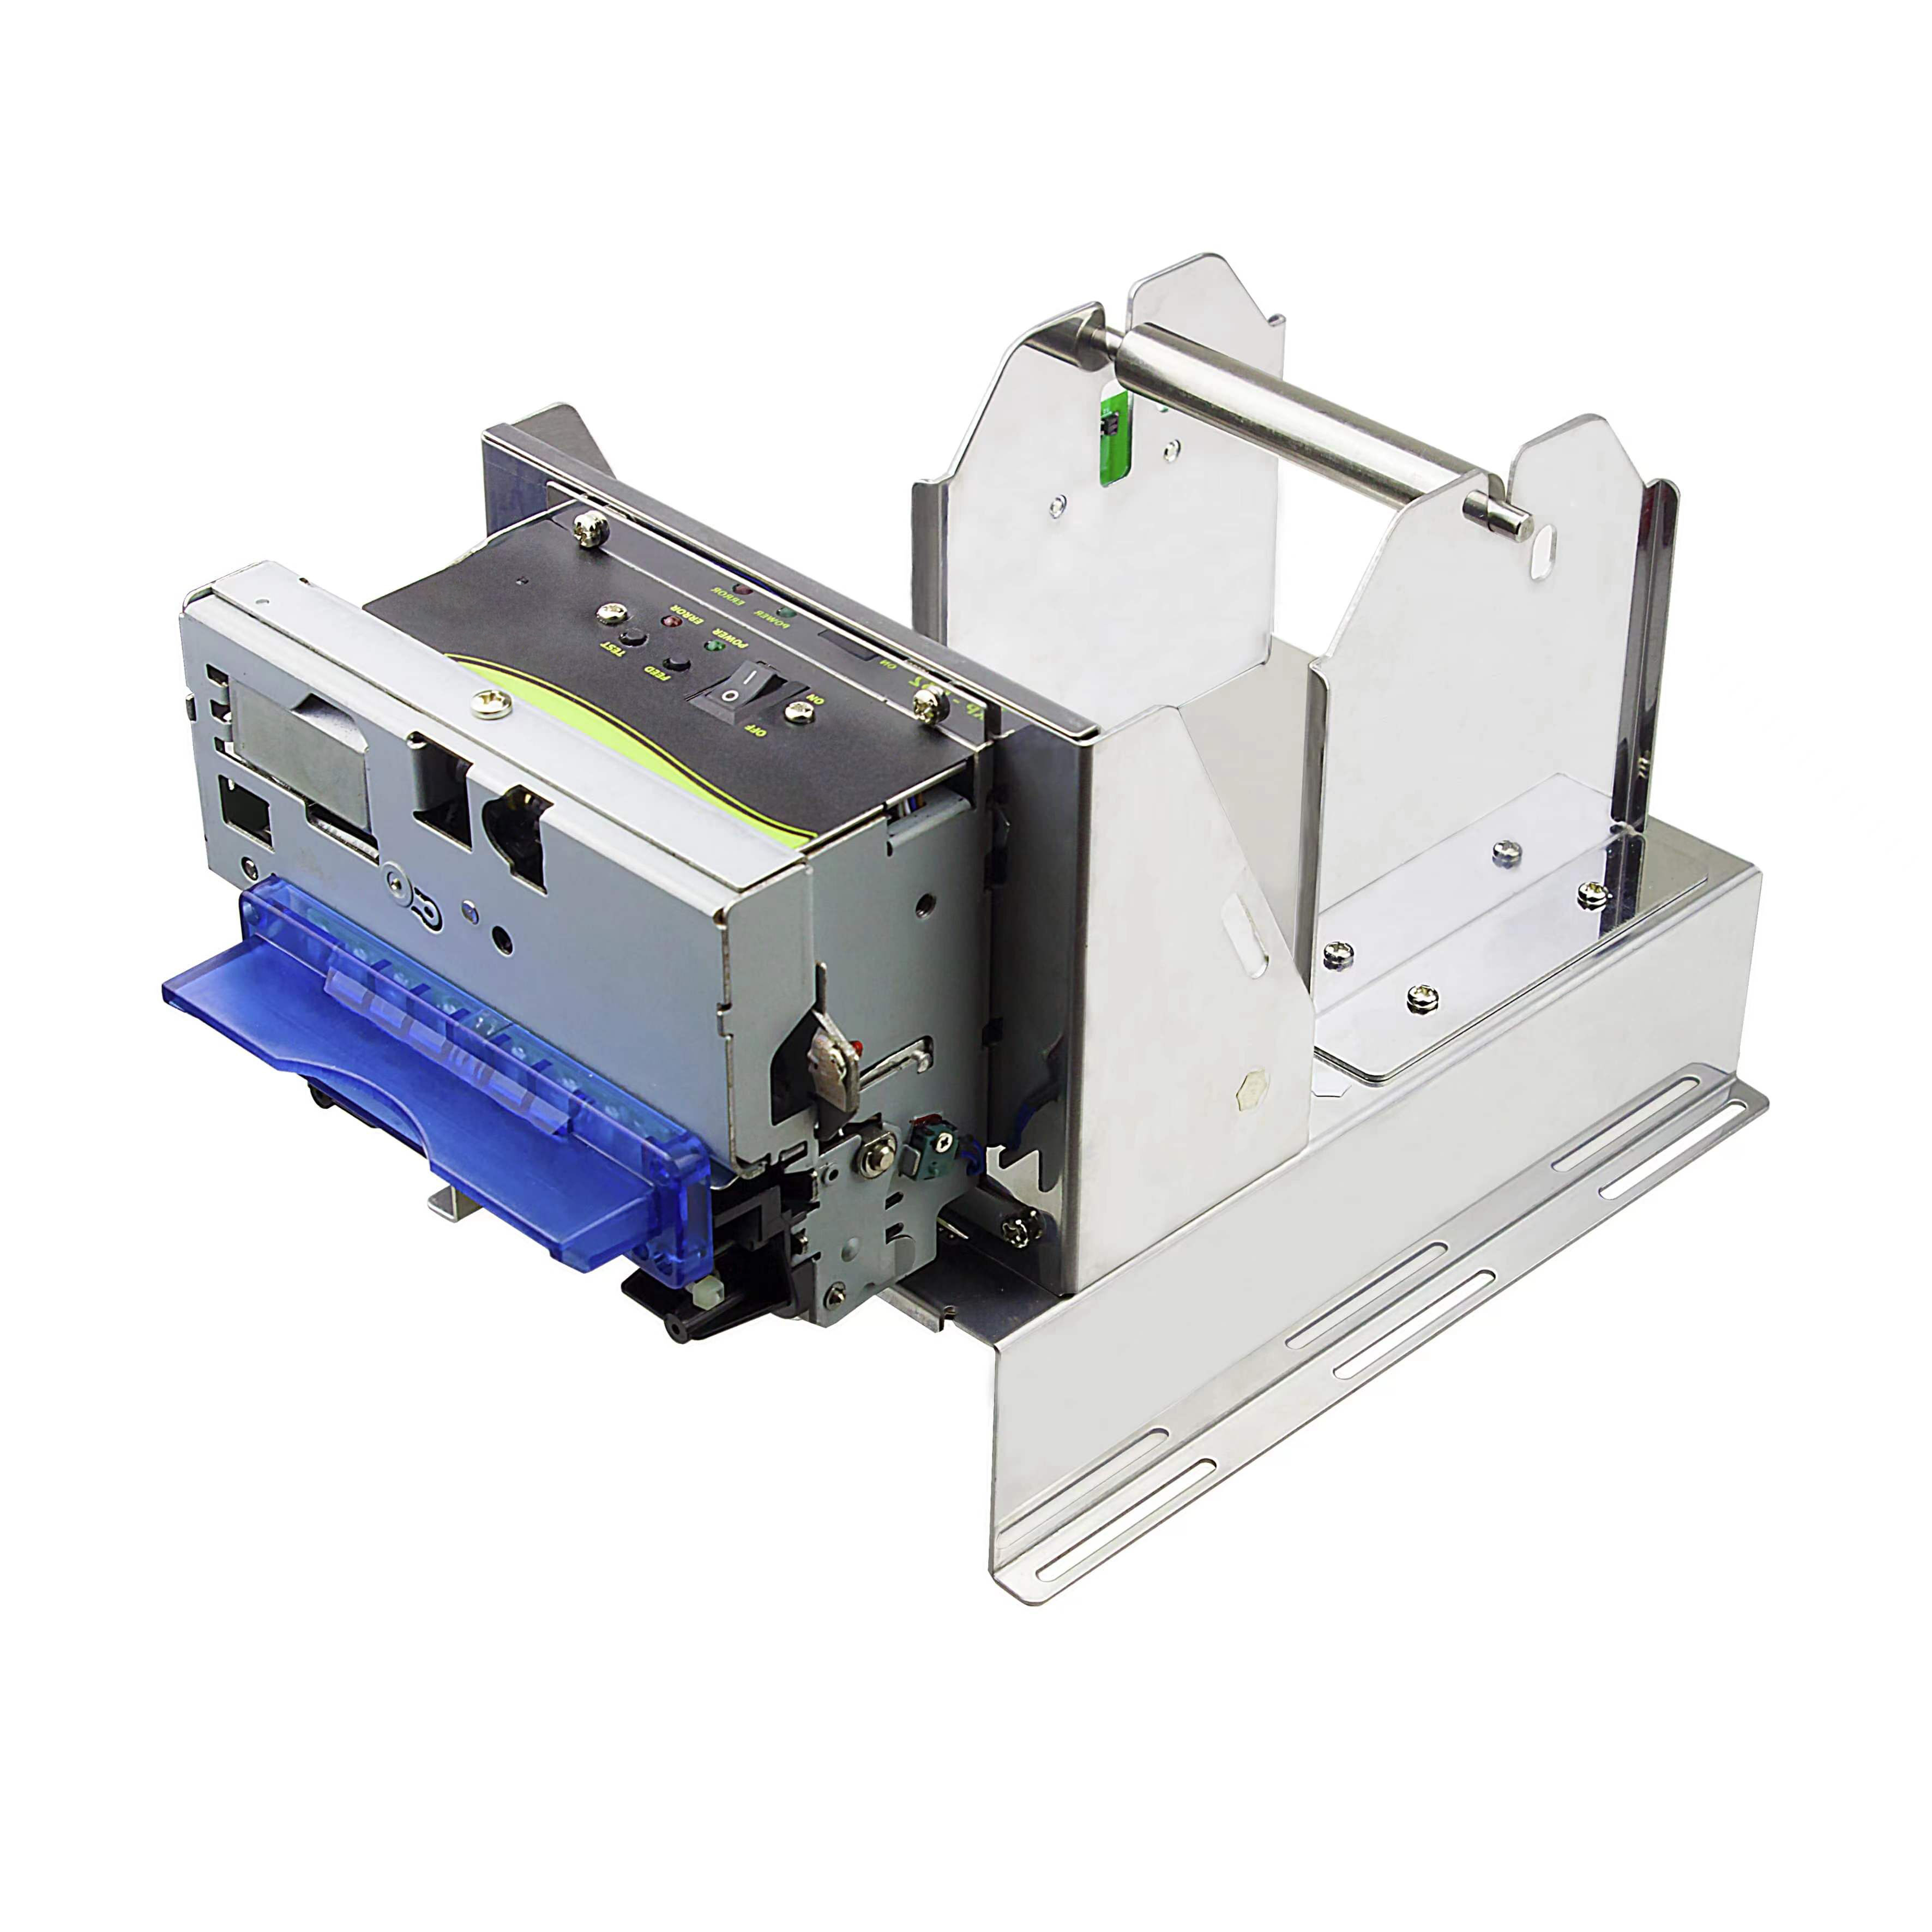 (OCKP-8005) Módulo de impresora térmica de recibos KIOSCO de 80 mm